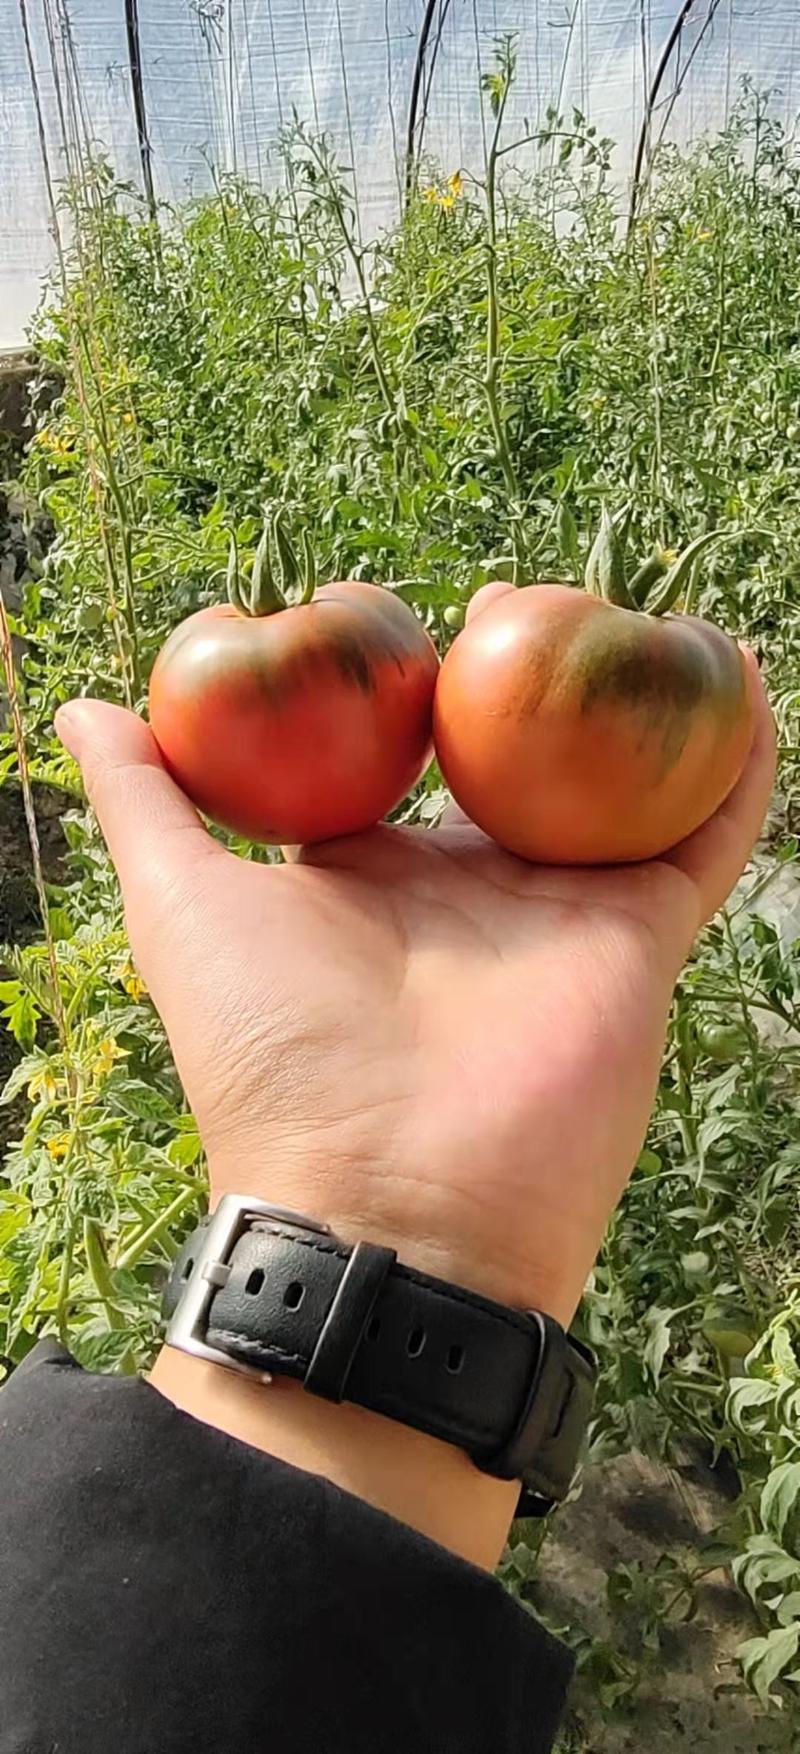 铁皮西红柿草莓西红柿绿肩浓糖度8到12个有种有苗